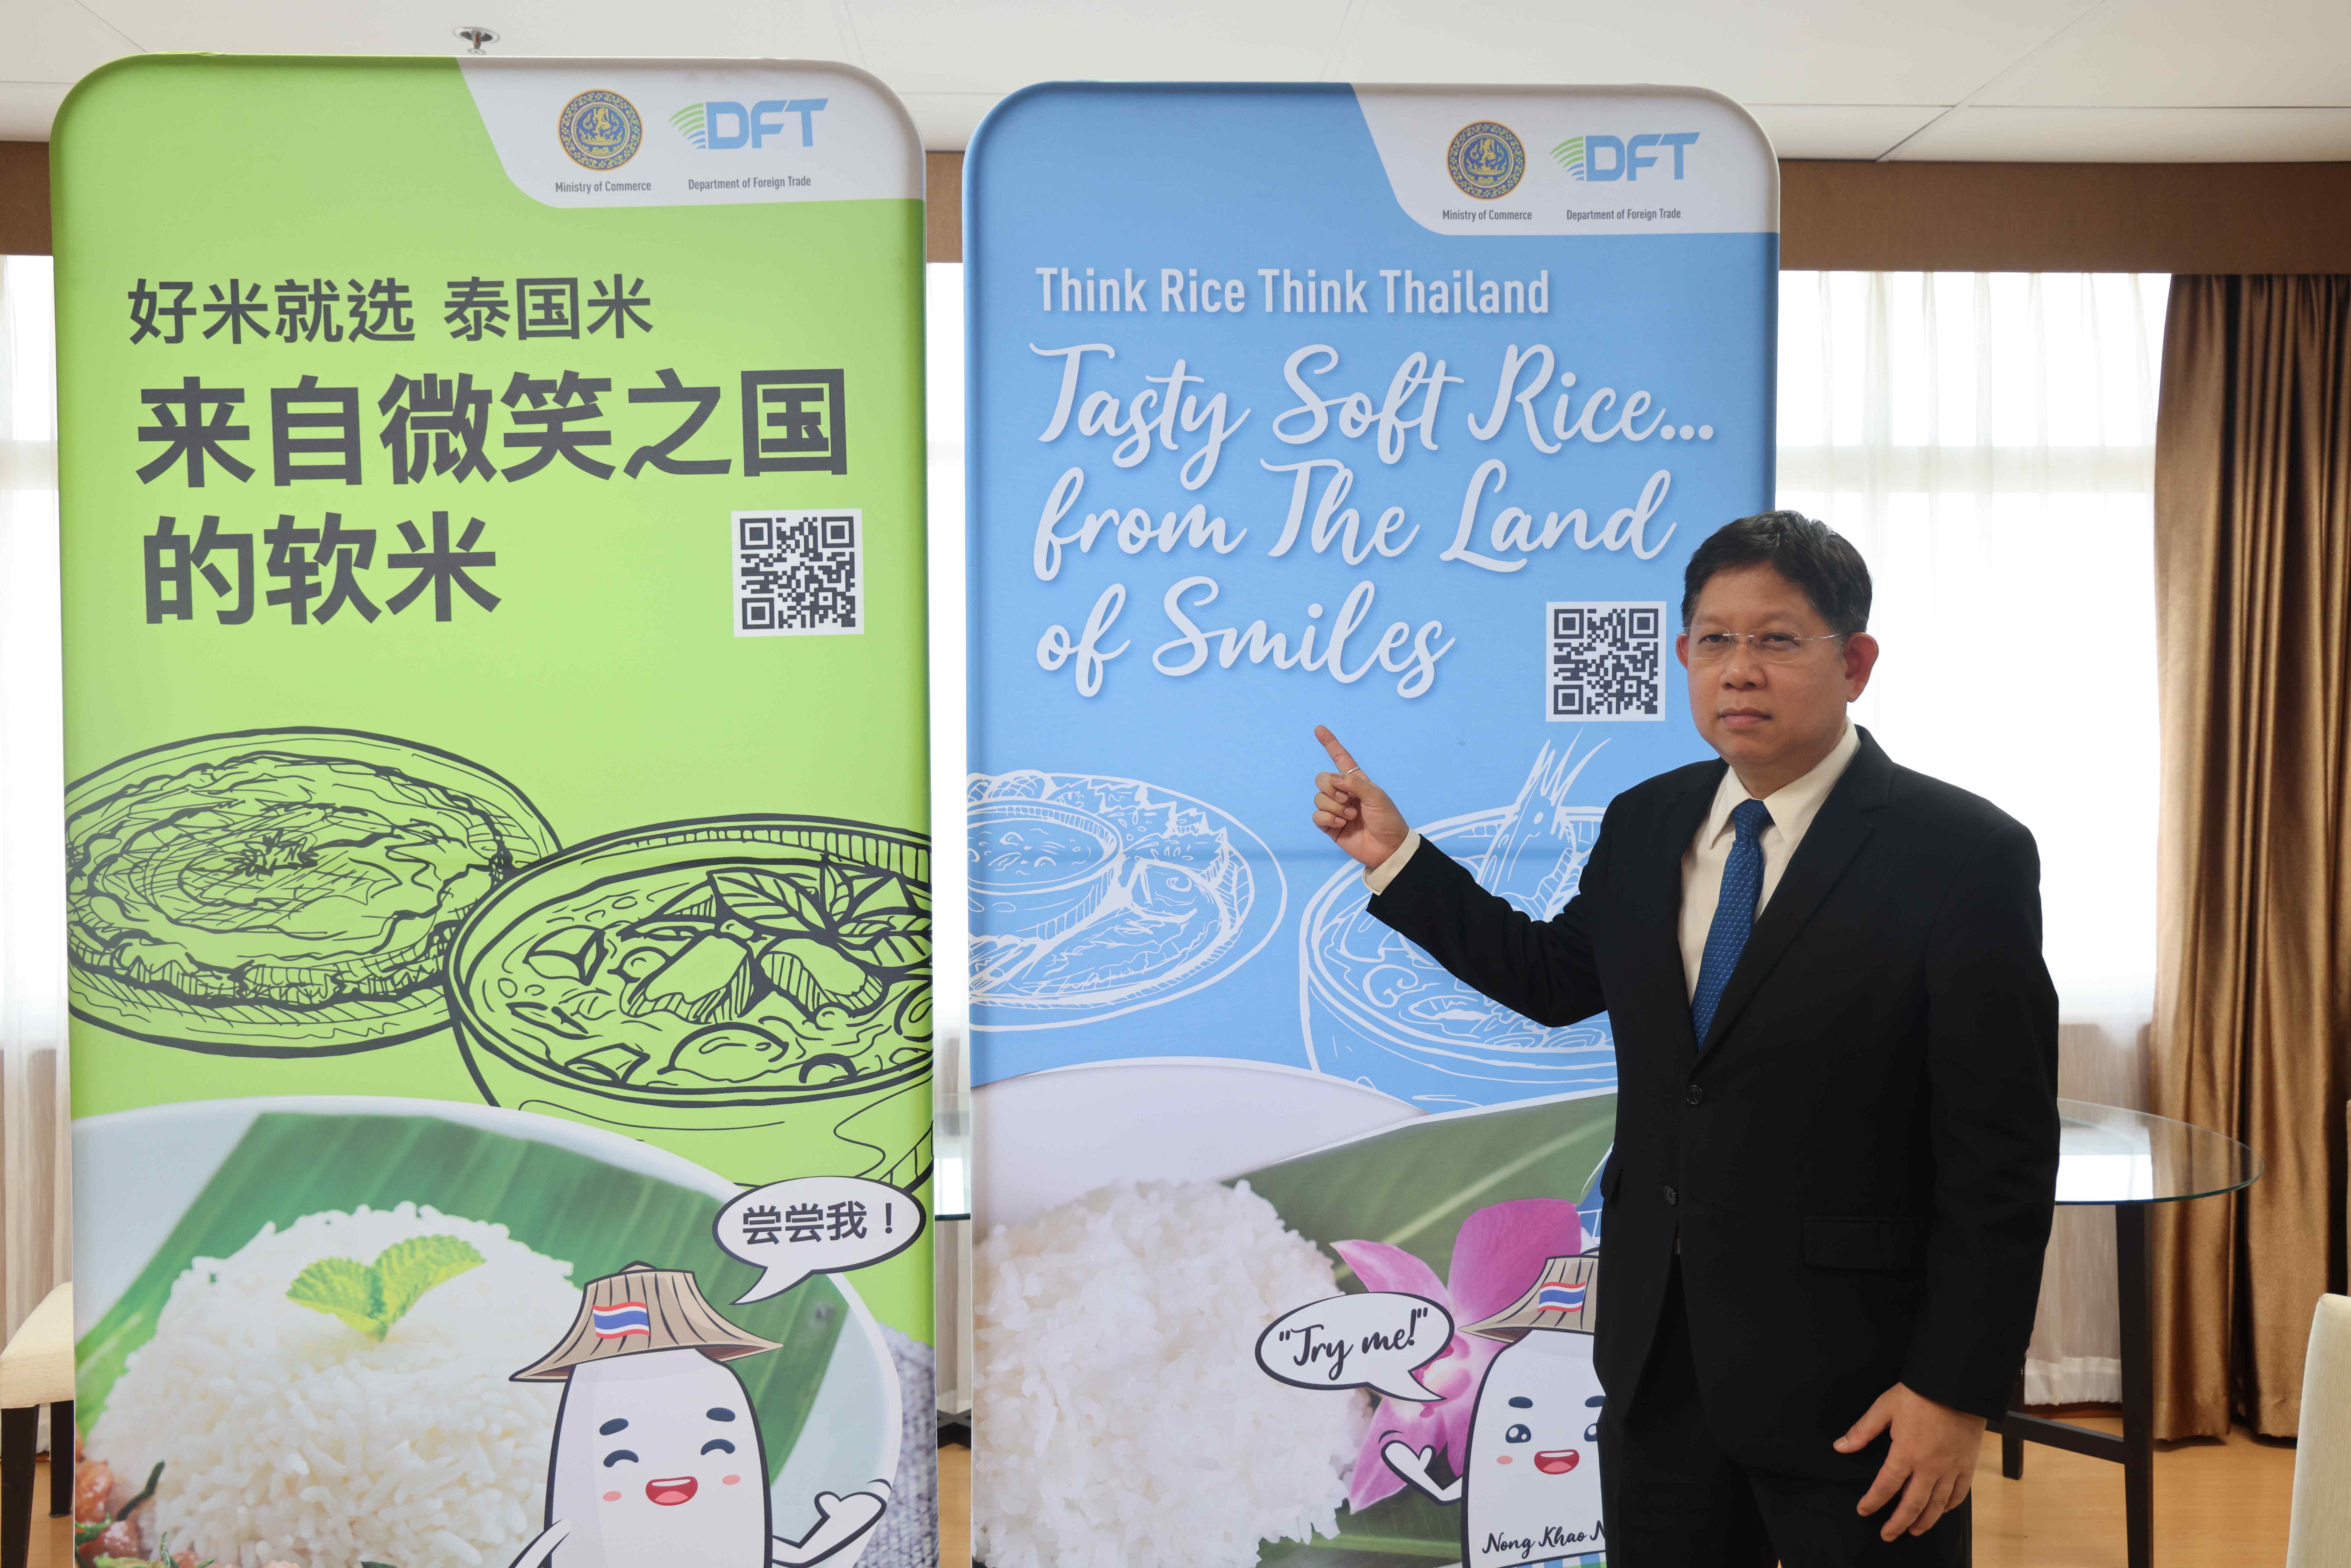 泰国对华推广新品软质白米以增强市场竞争力